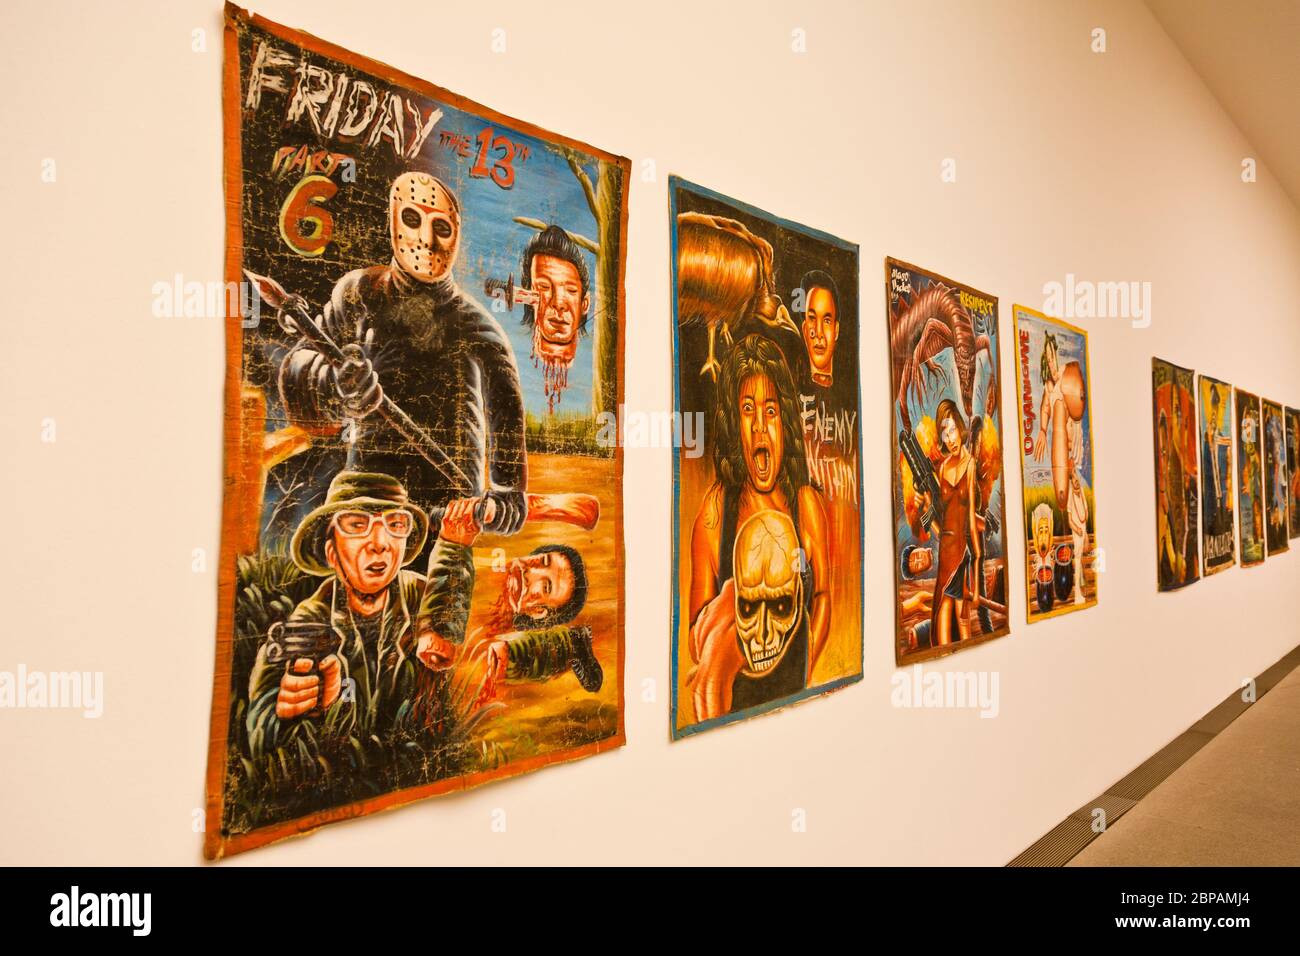 Mostra di poster d'arte moderna nella galleria Neue Pinakothek di Monaco di Baviera, Germania Foto Stock